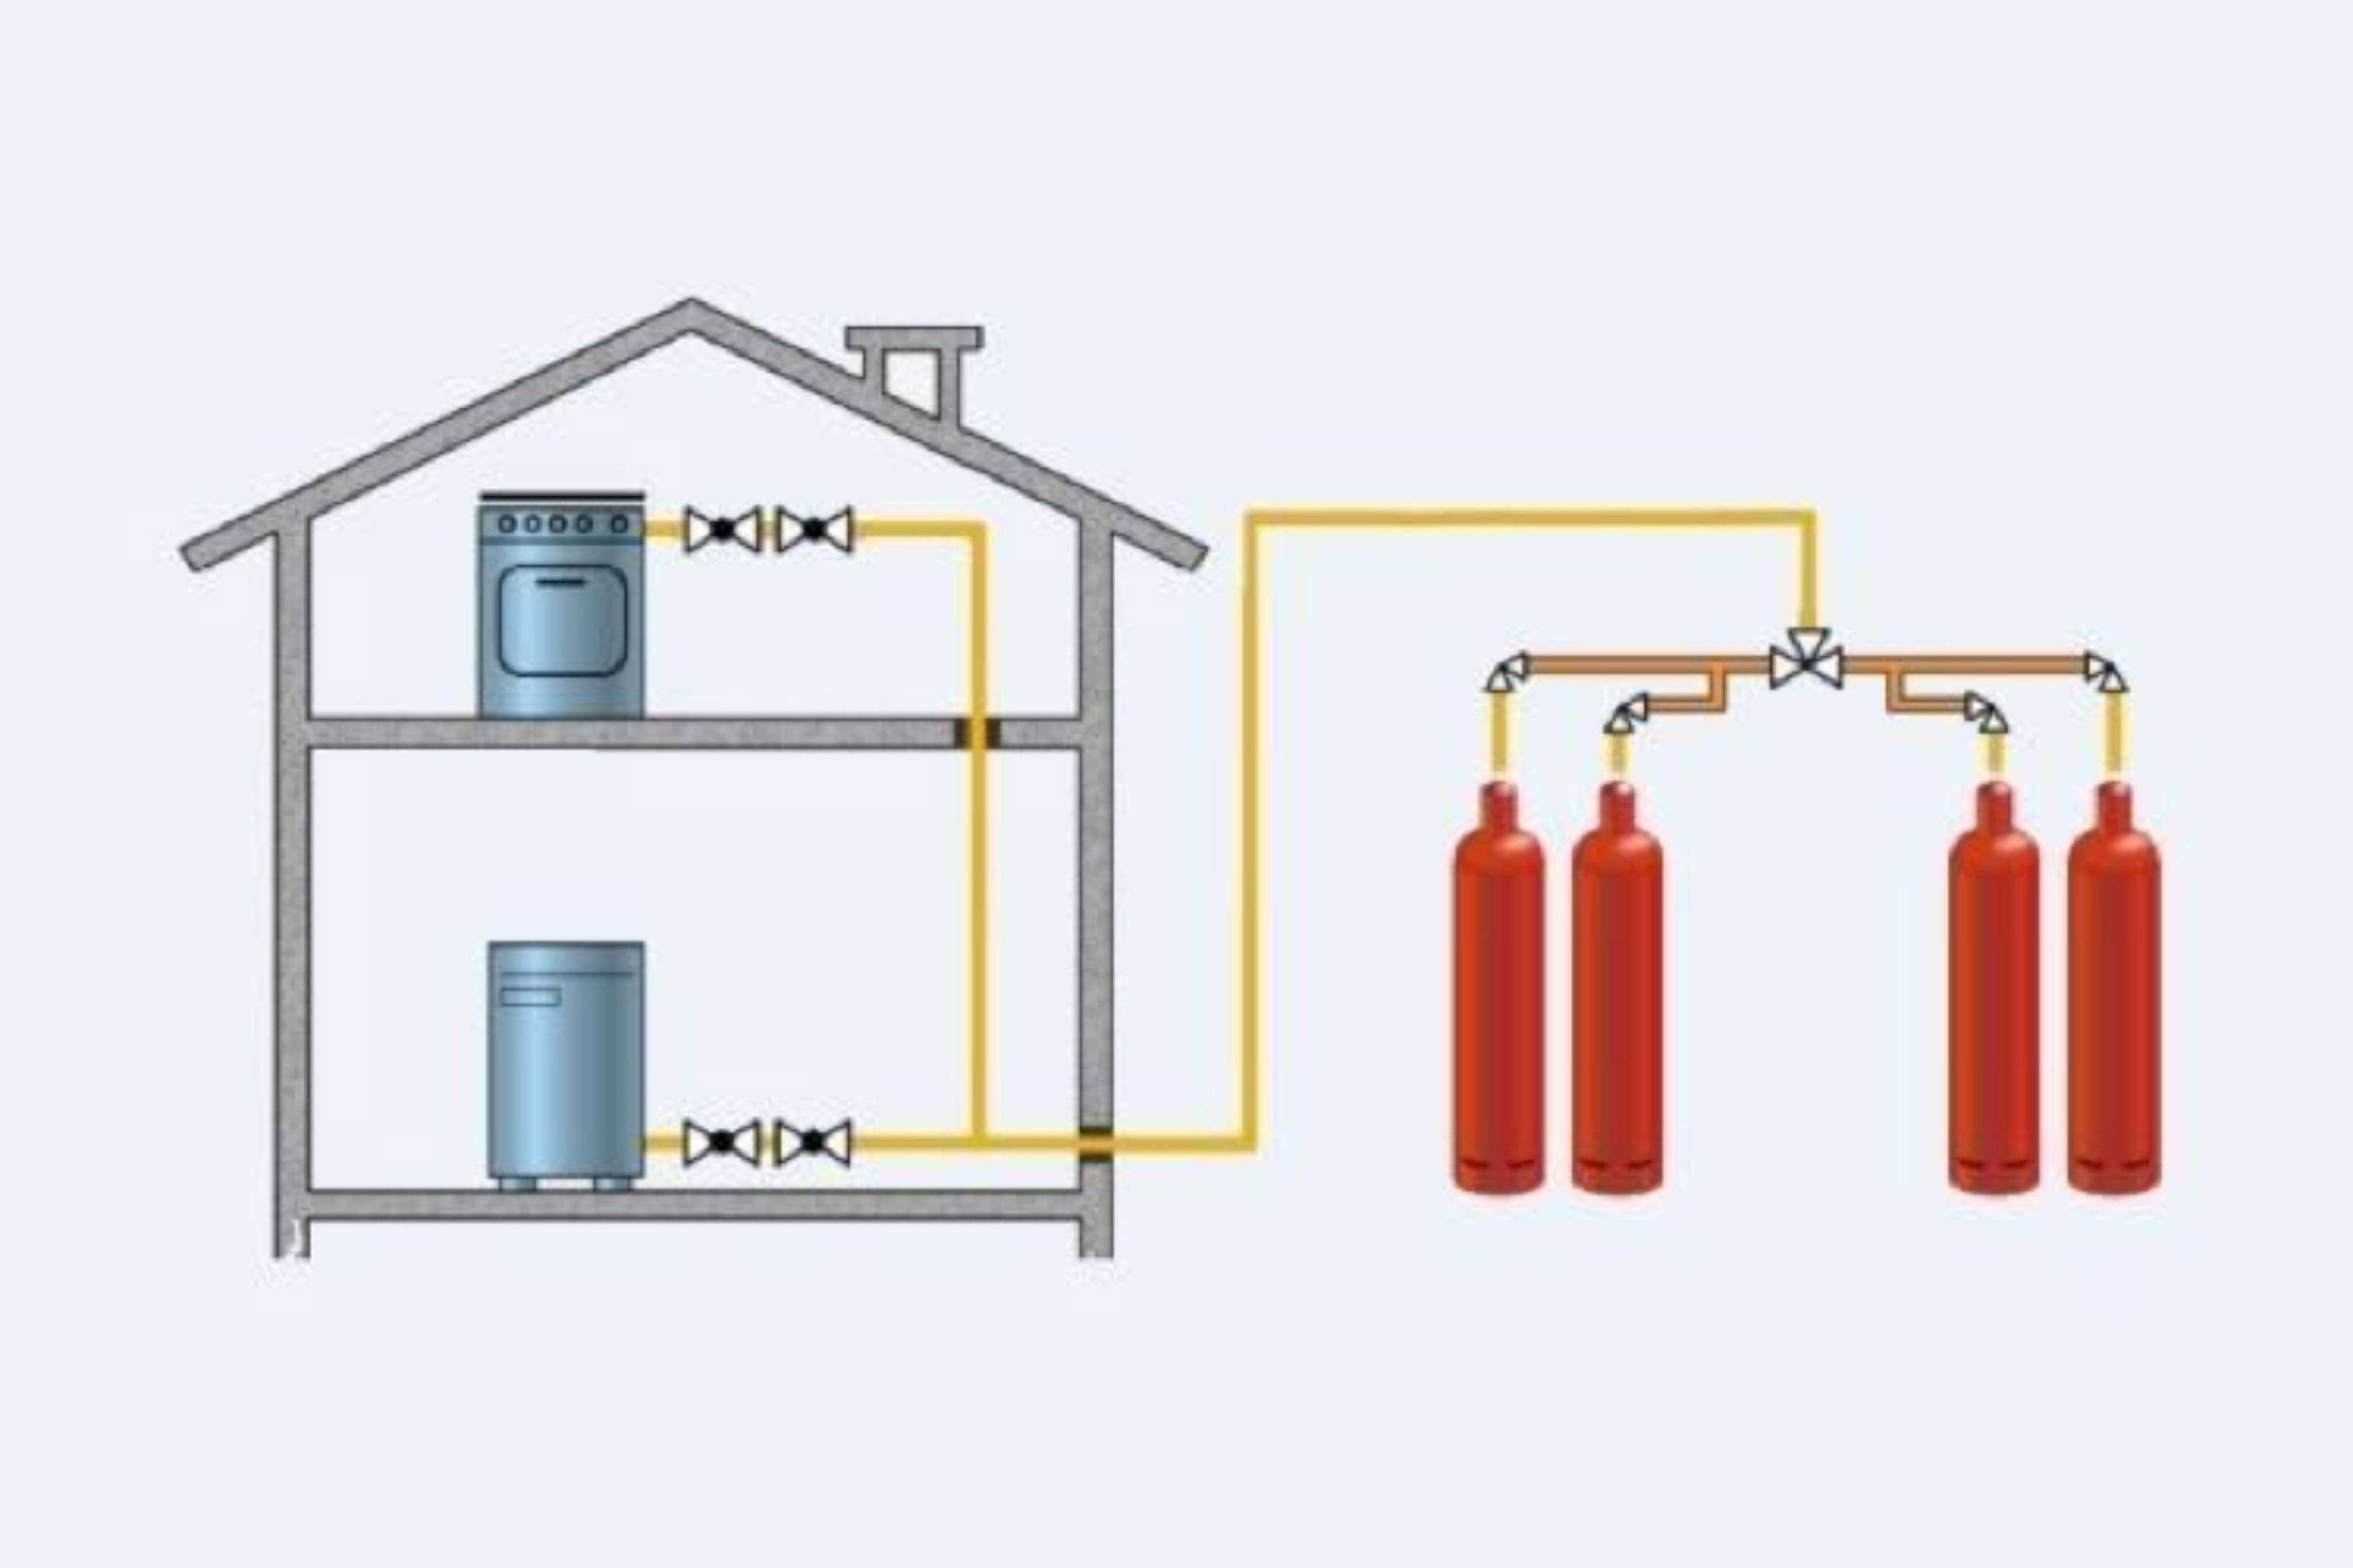 Отопление дома газовыми баллонами: эффективное газовое отопление частного дома на баллонах, фото и видео примеры